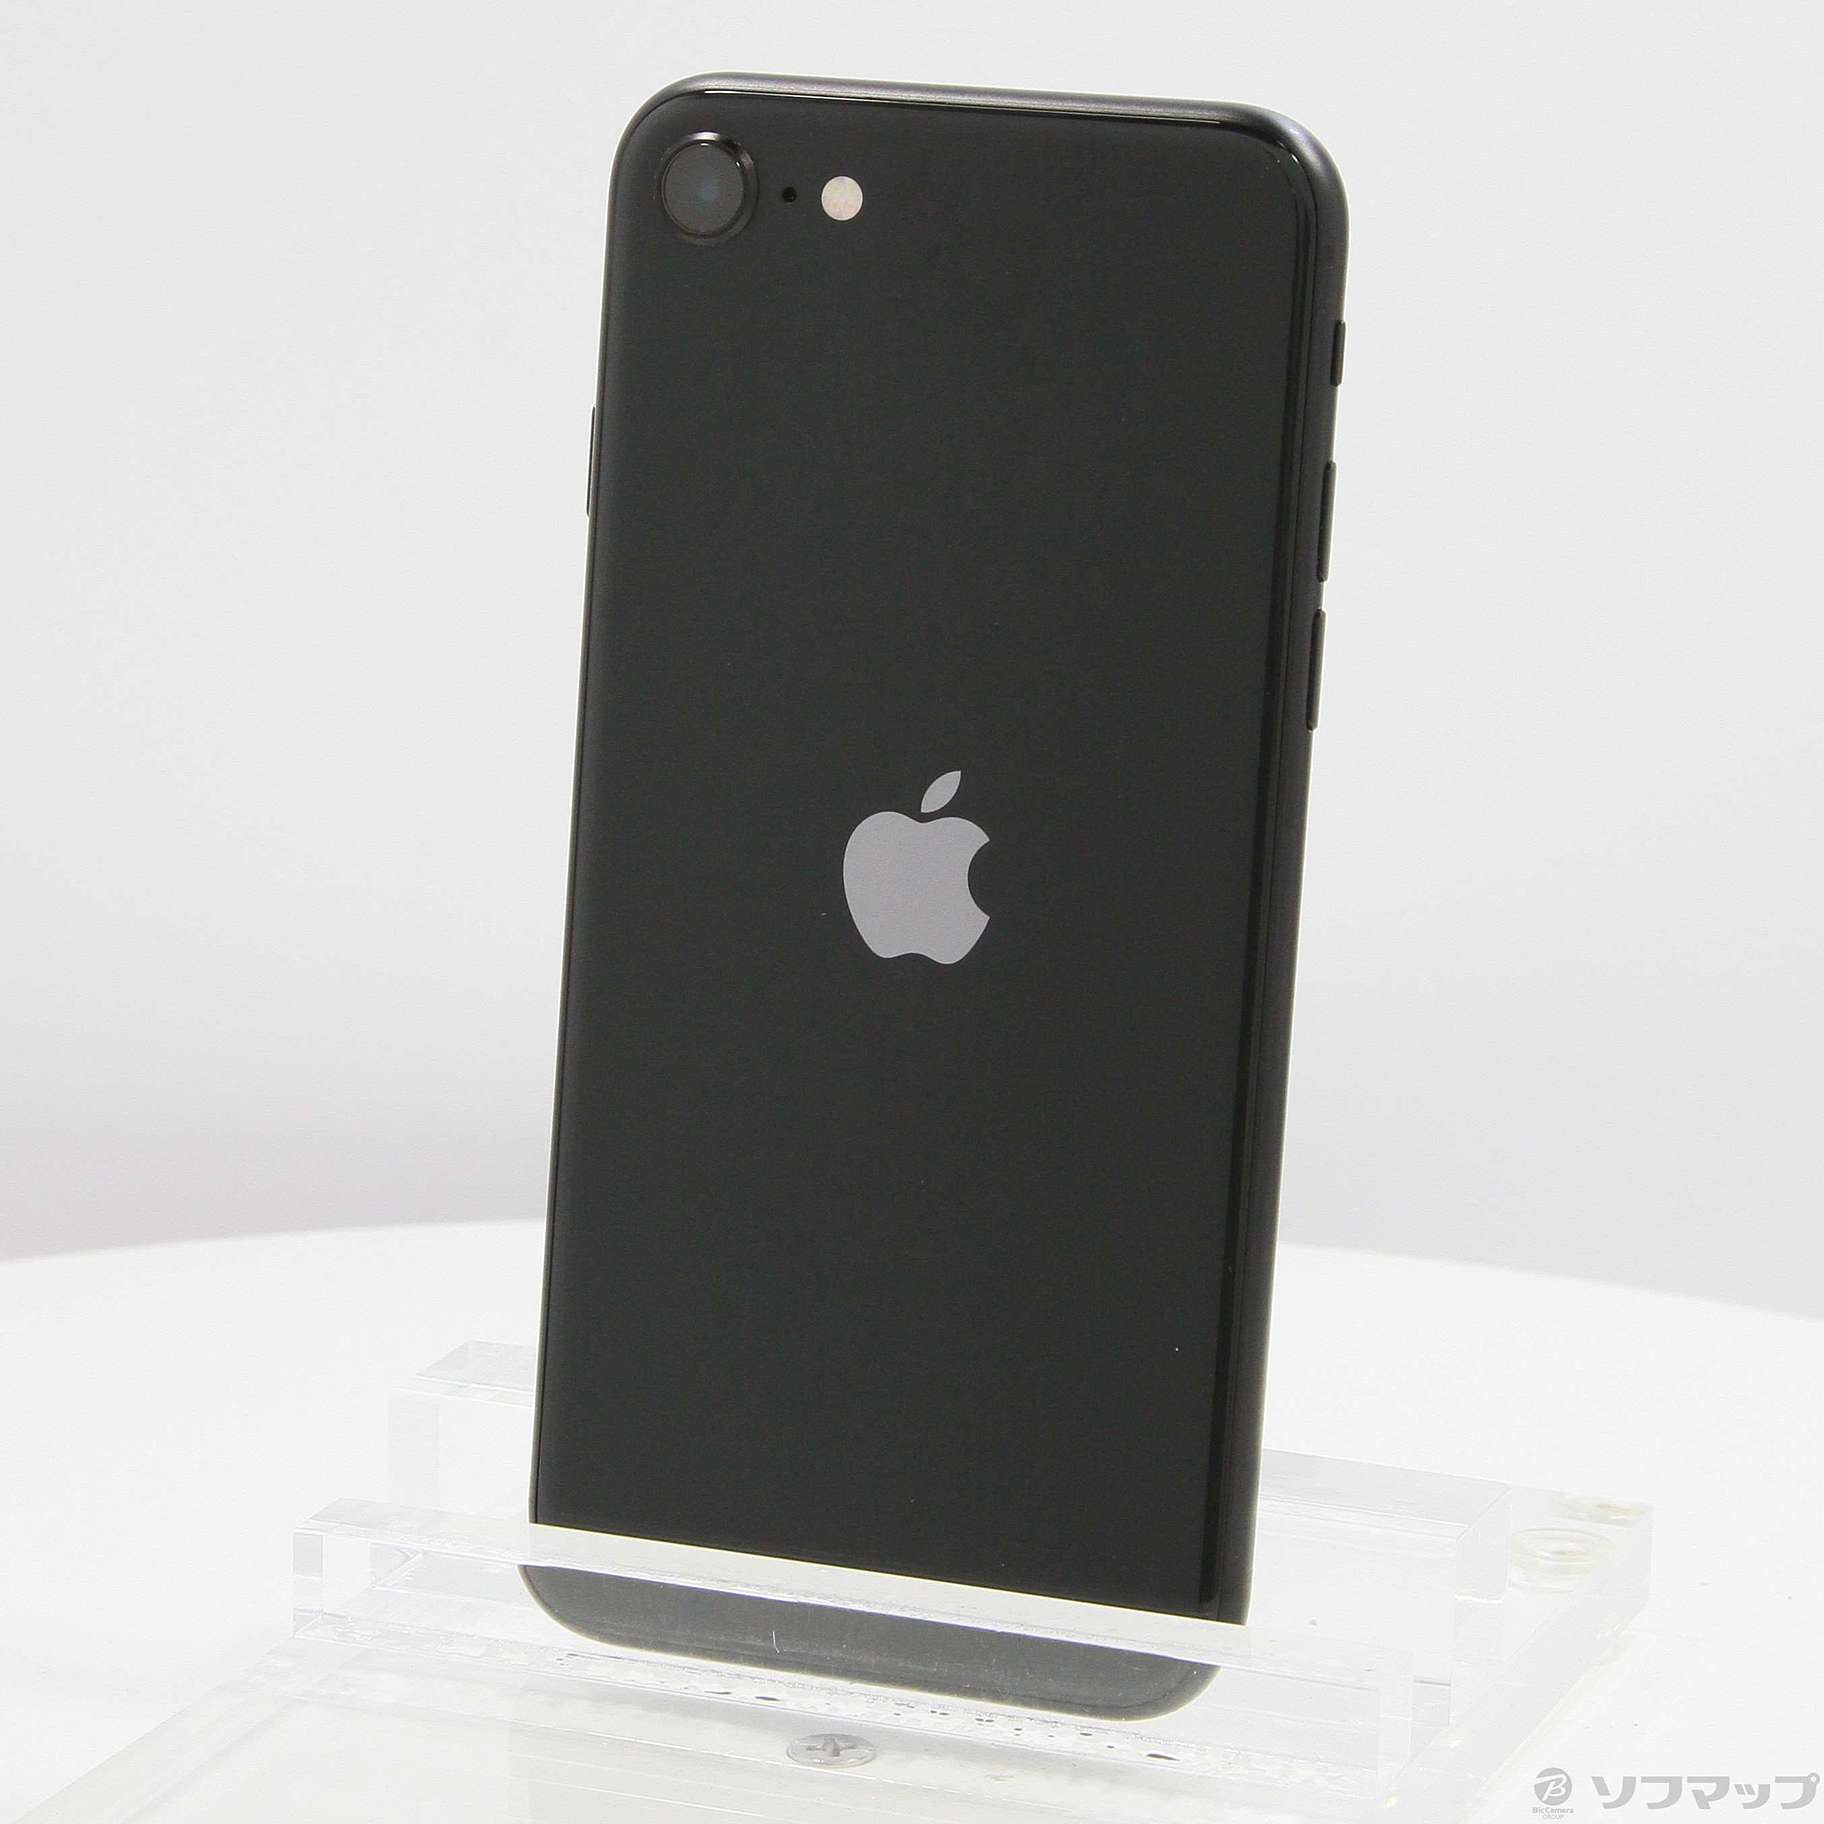 iPhone SE 第2世代 (SE2) Black 黒 128GB - www.sorbillomenu.com